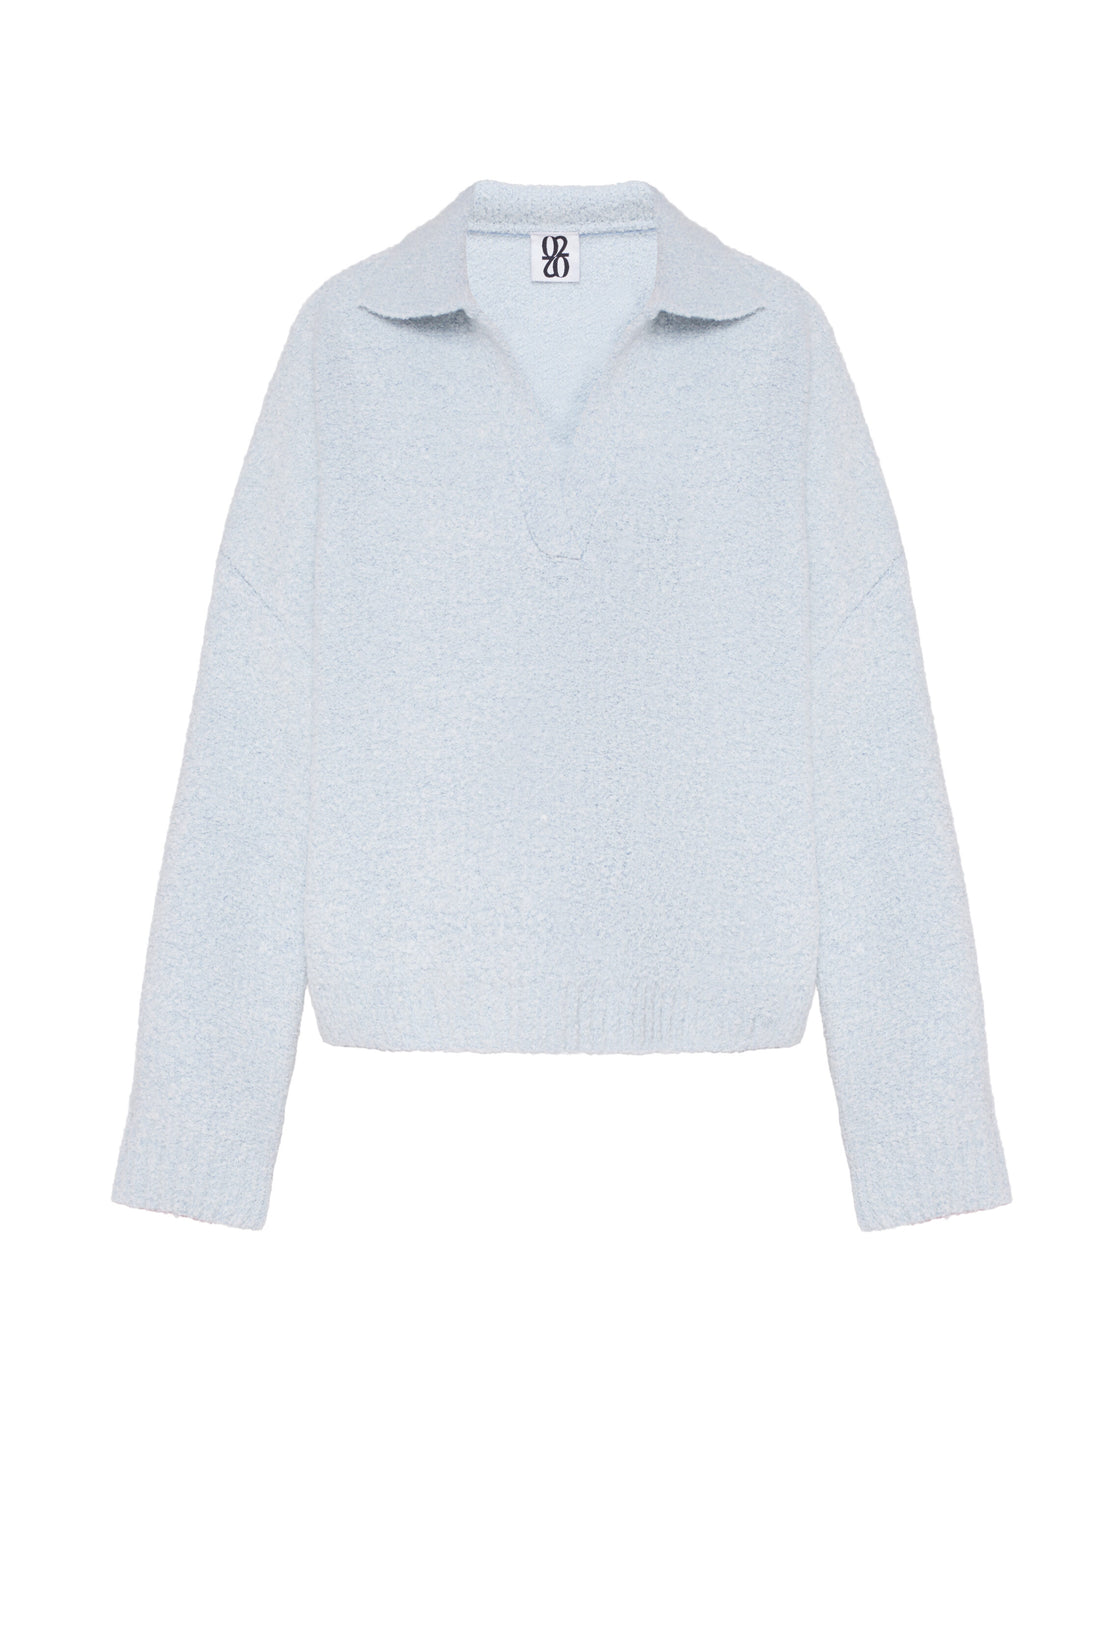 Bouclé sweater, light blue (0202)